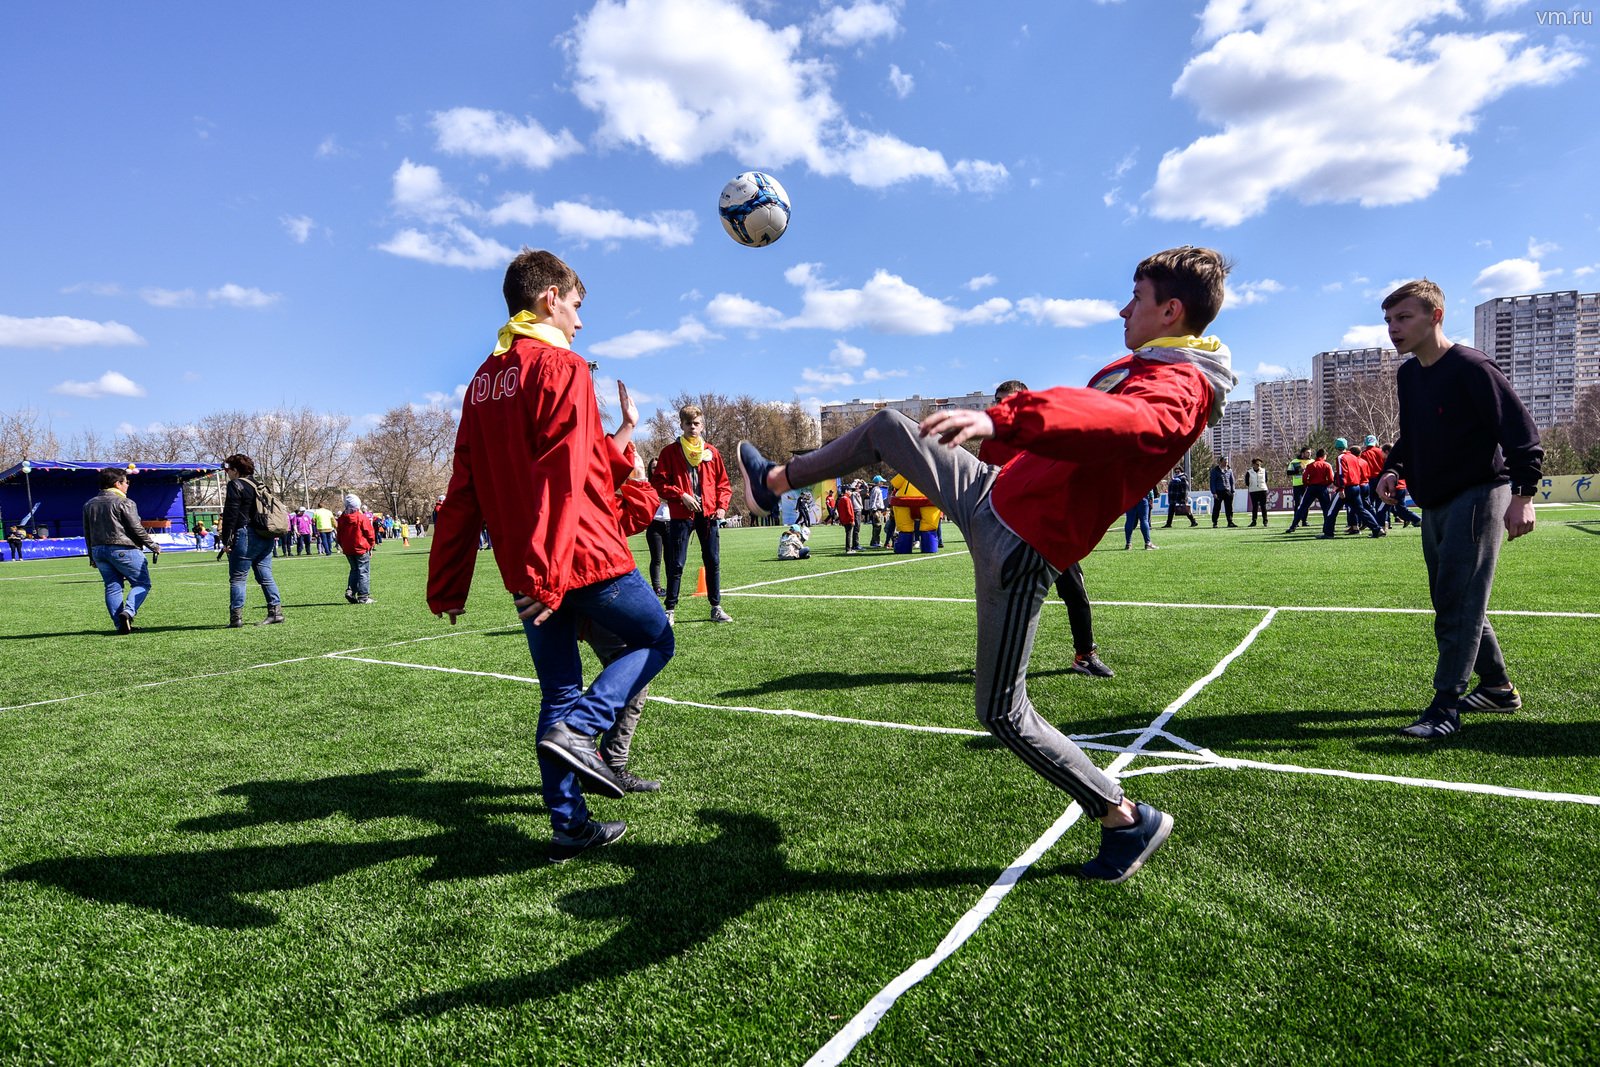 Сыграть турнир футбольный. Игра футбол. Футбол в парке. Дети играют в футбол. Футбольное поле во дворе.